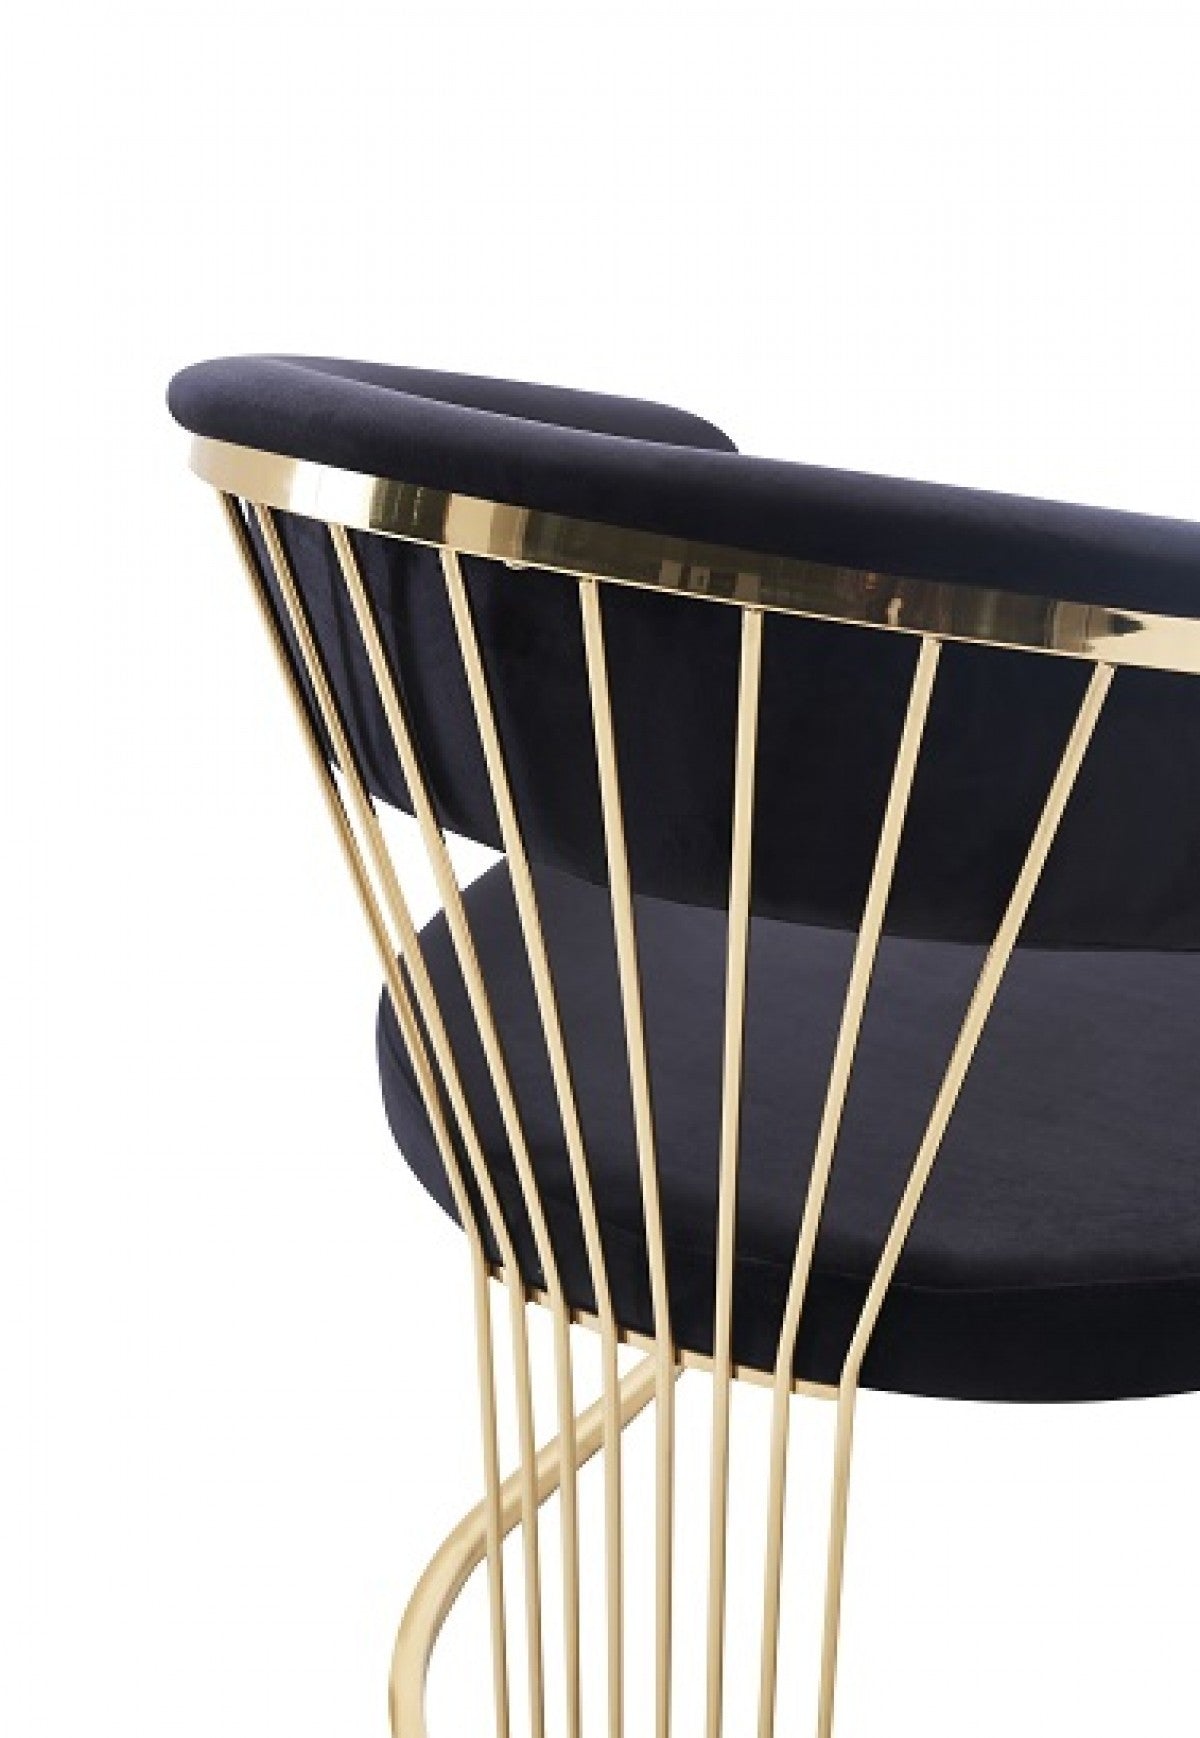 Modrest Linda Modern Black Velvet and Gold Dining Chair - Enova Luxe Home Store